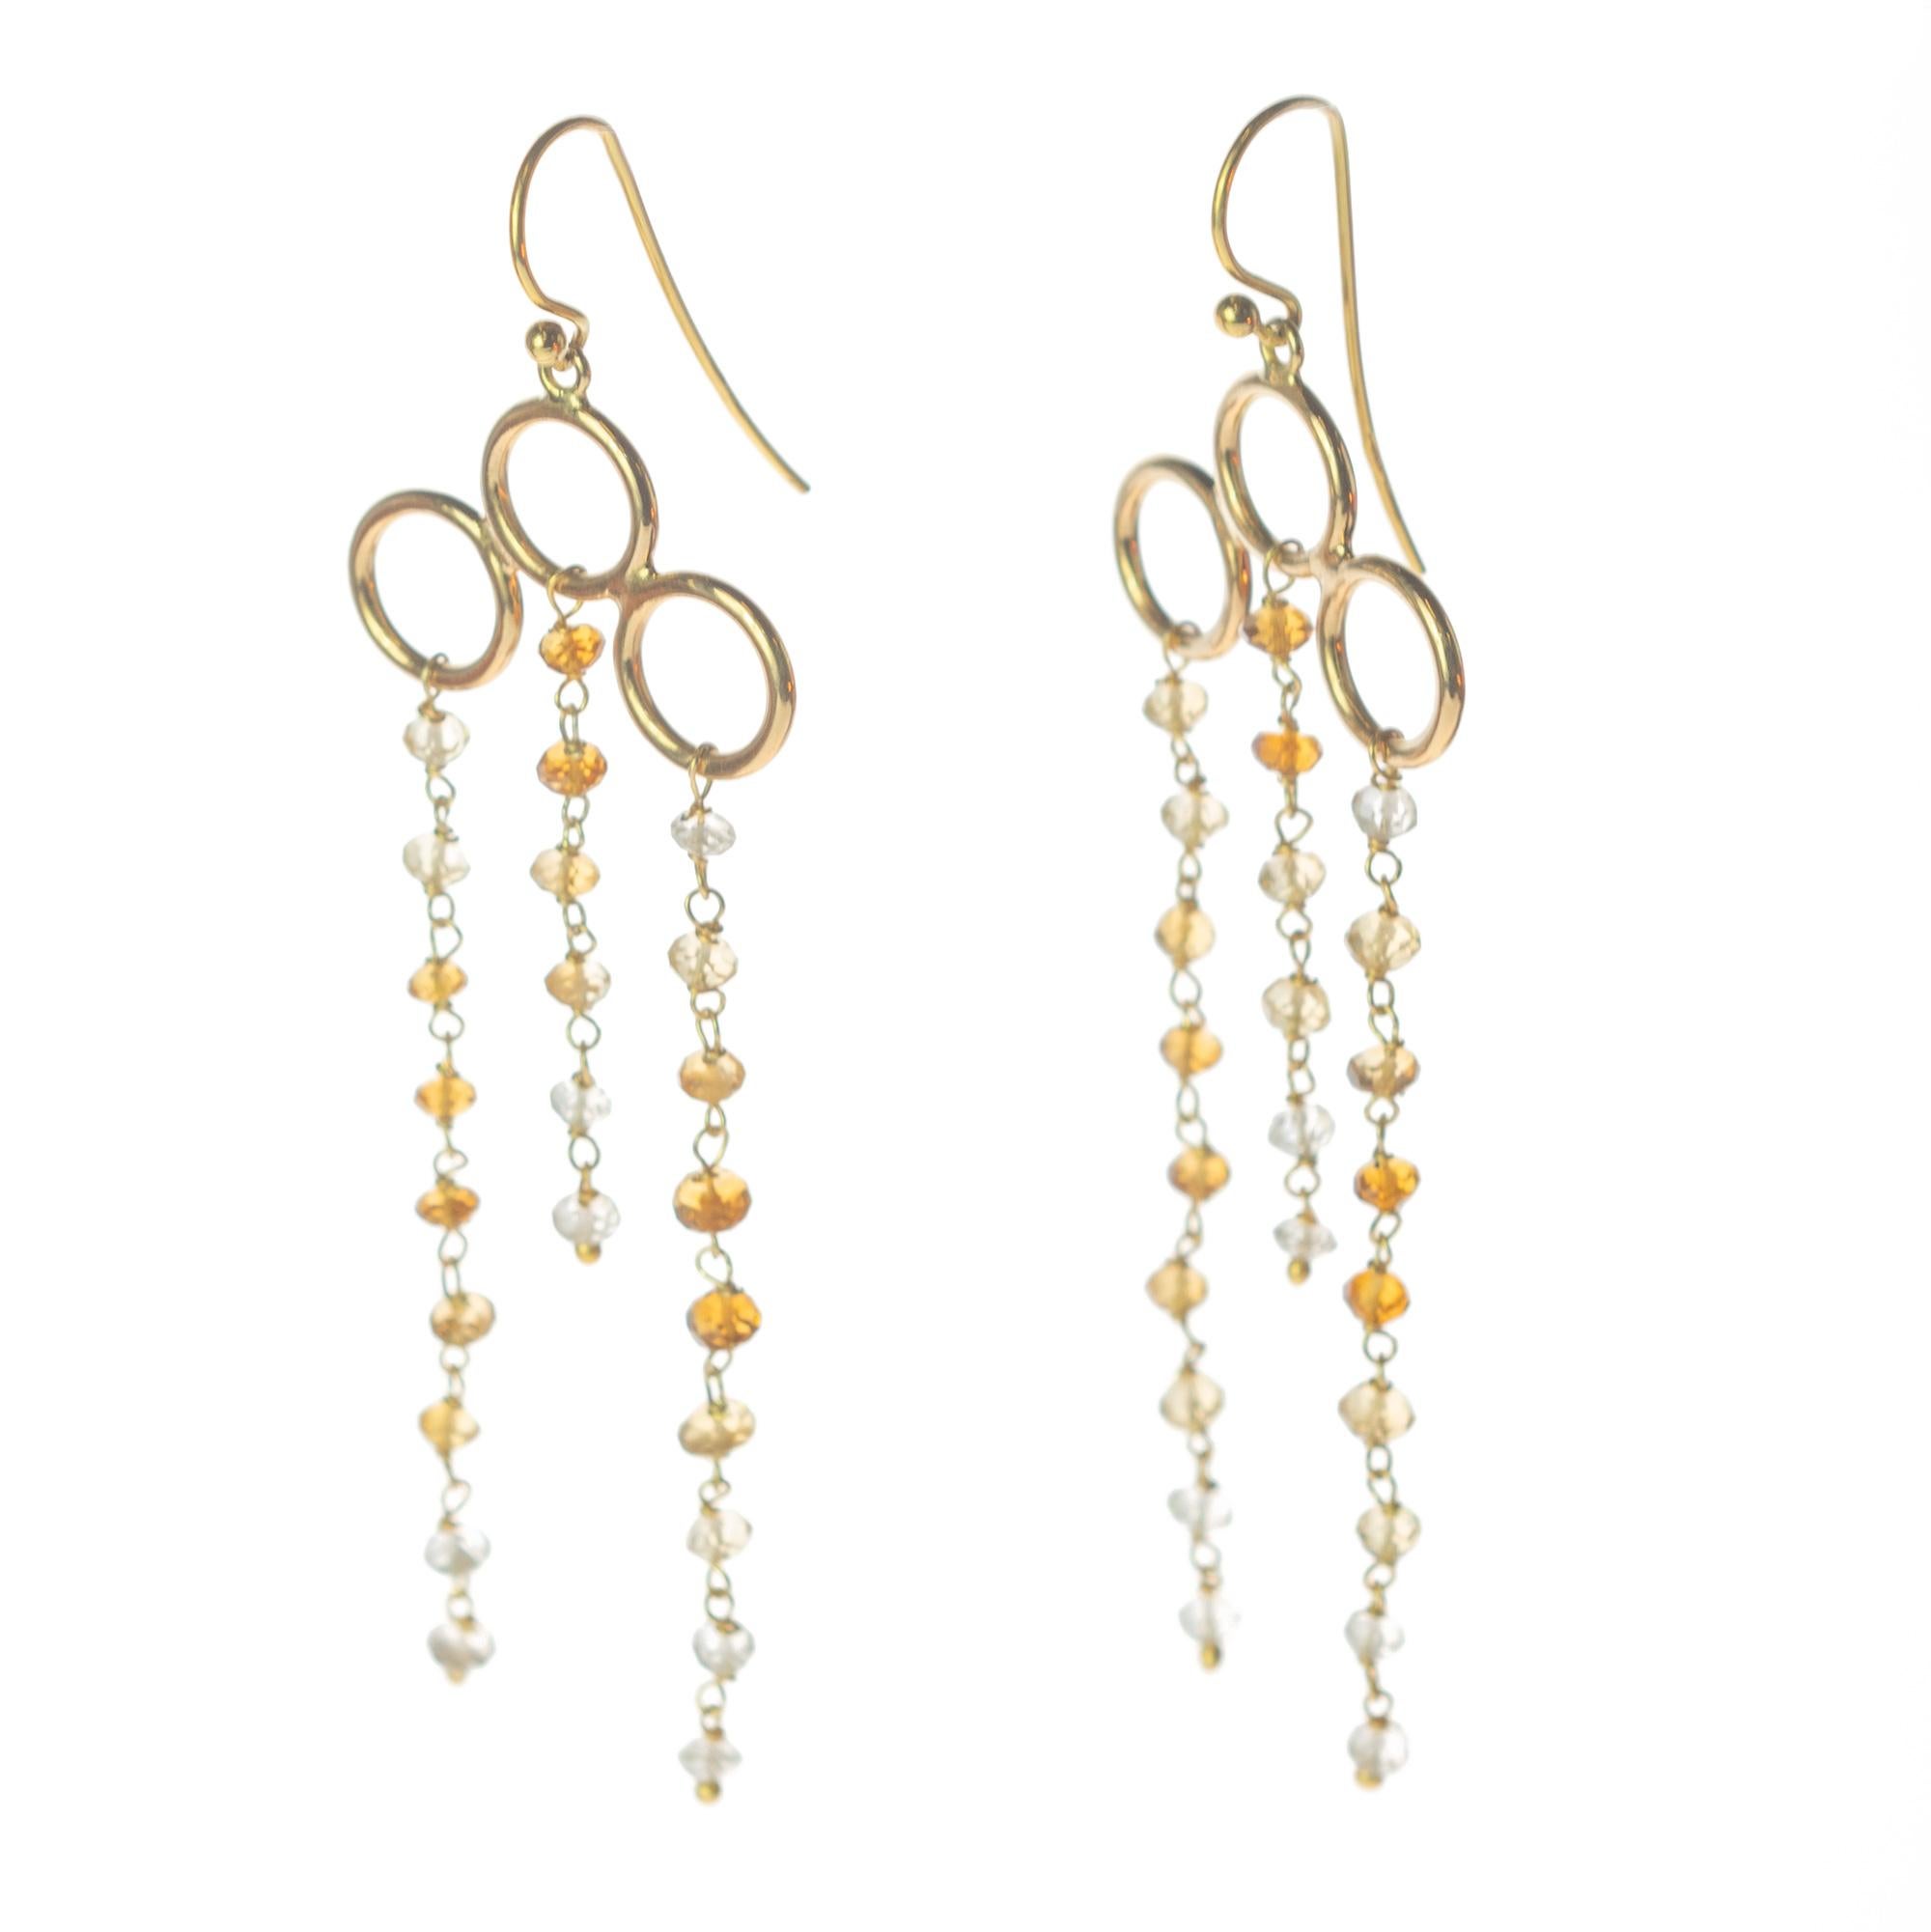 delicate chandelier earrings